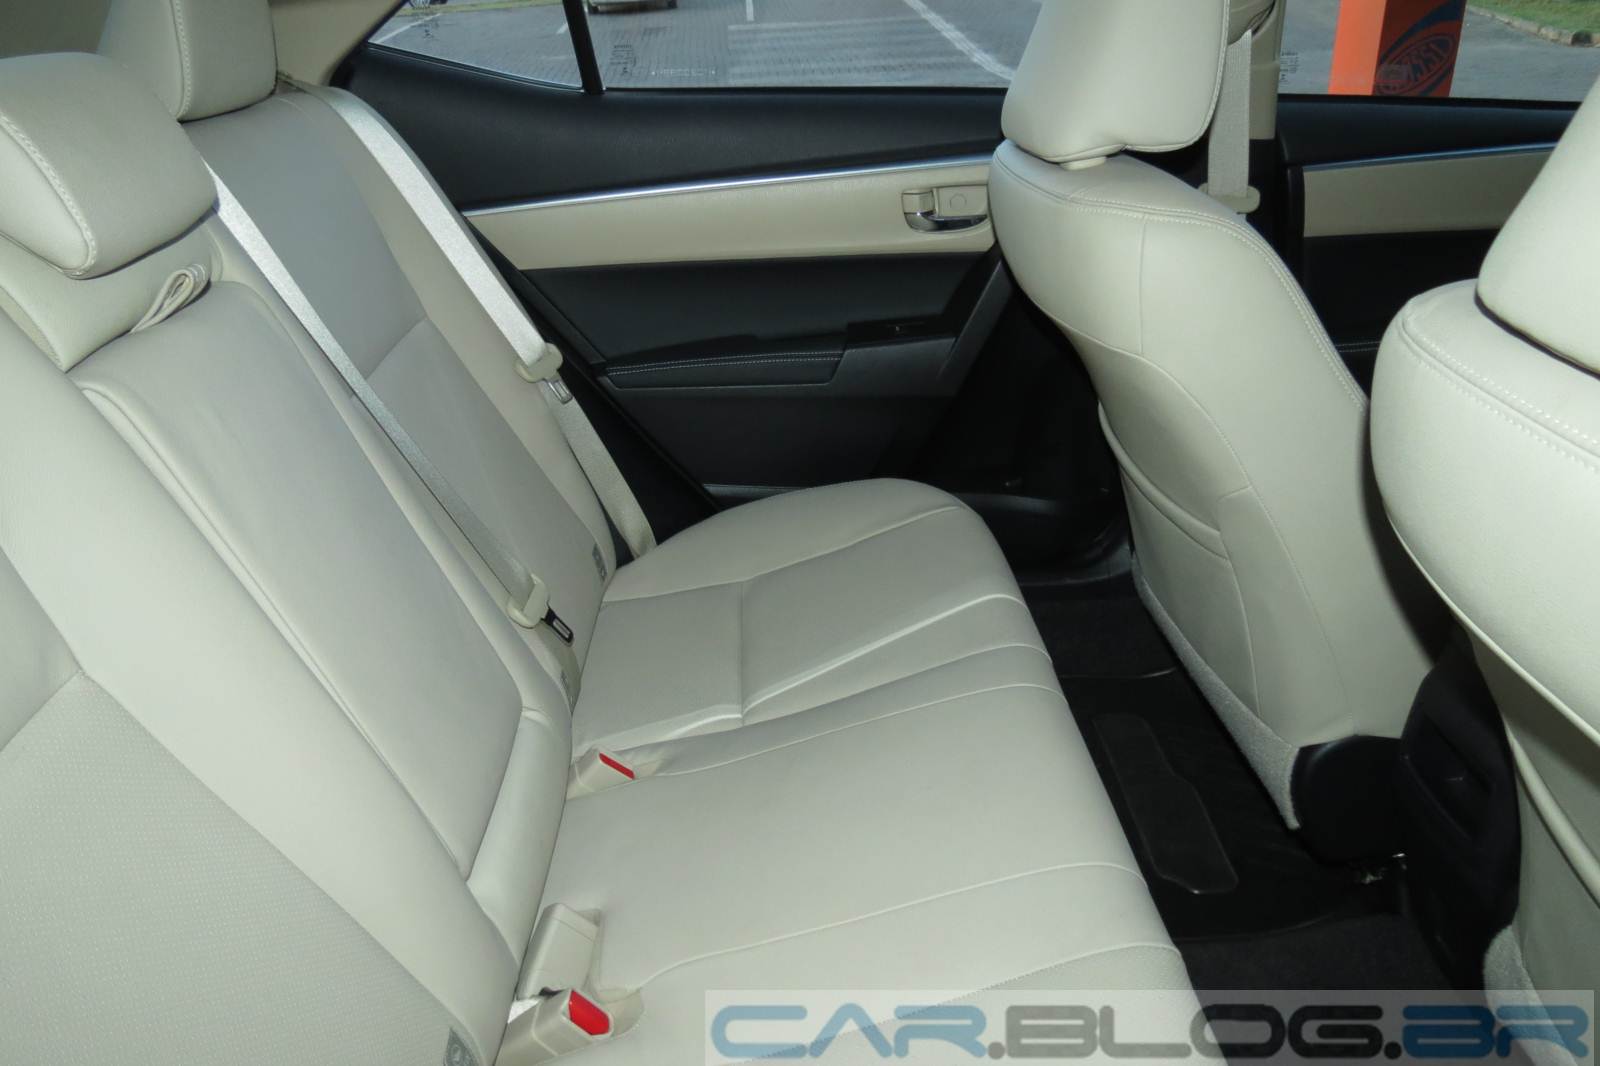 Toyota Corolla Altis 2015 - interior - espaço traseiro